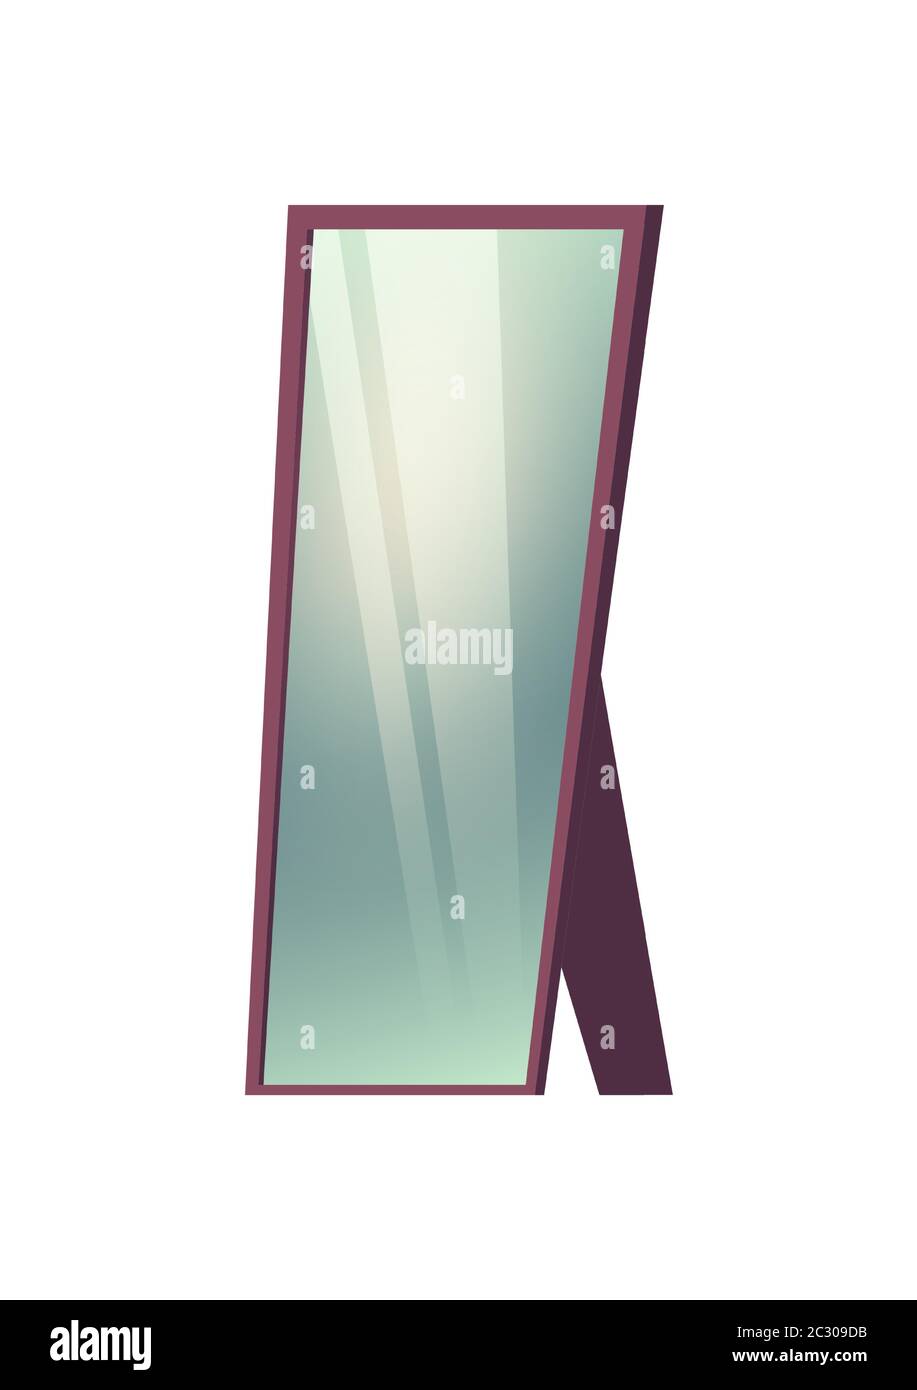 Miroir de plancher isolé sur fond blanc. Illustration vectorielle de la bande dessinée du miroir de rectrangle pleine longueur avec cadre violet et surface en verre f Illustration de Vecteur